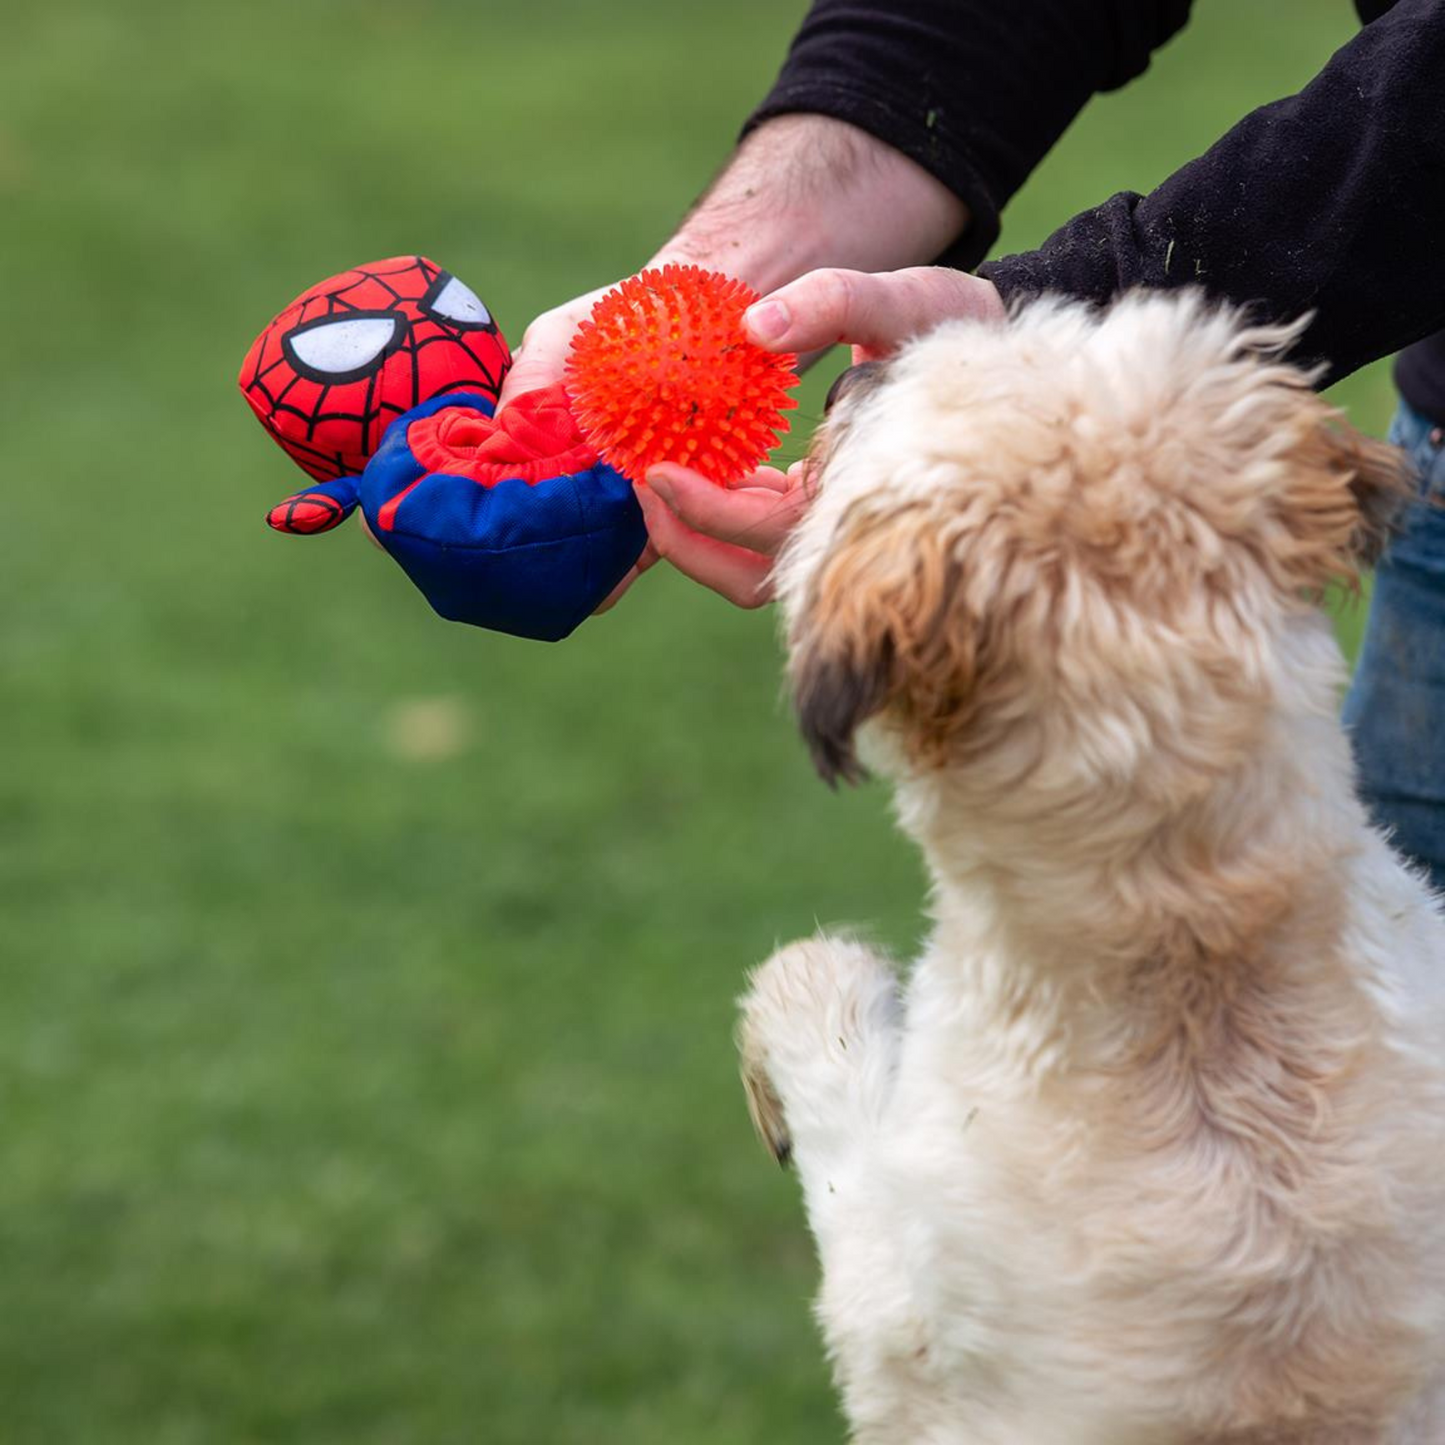 Spider-Man Dog Toy